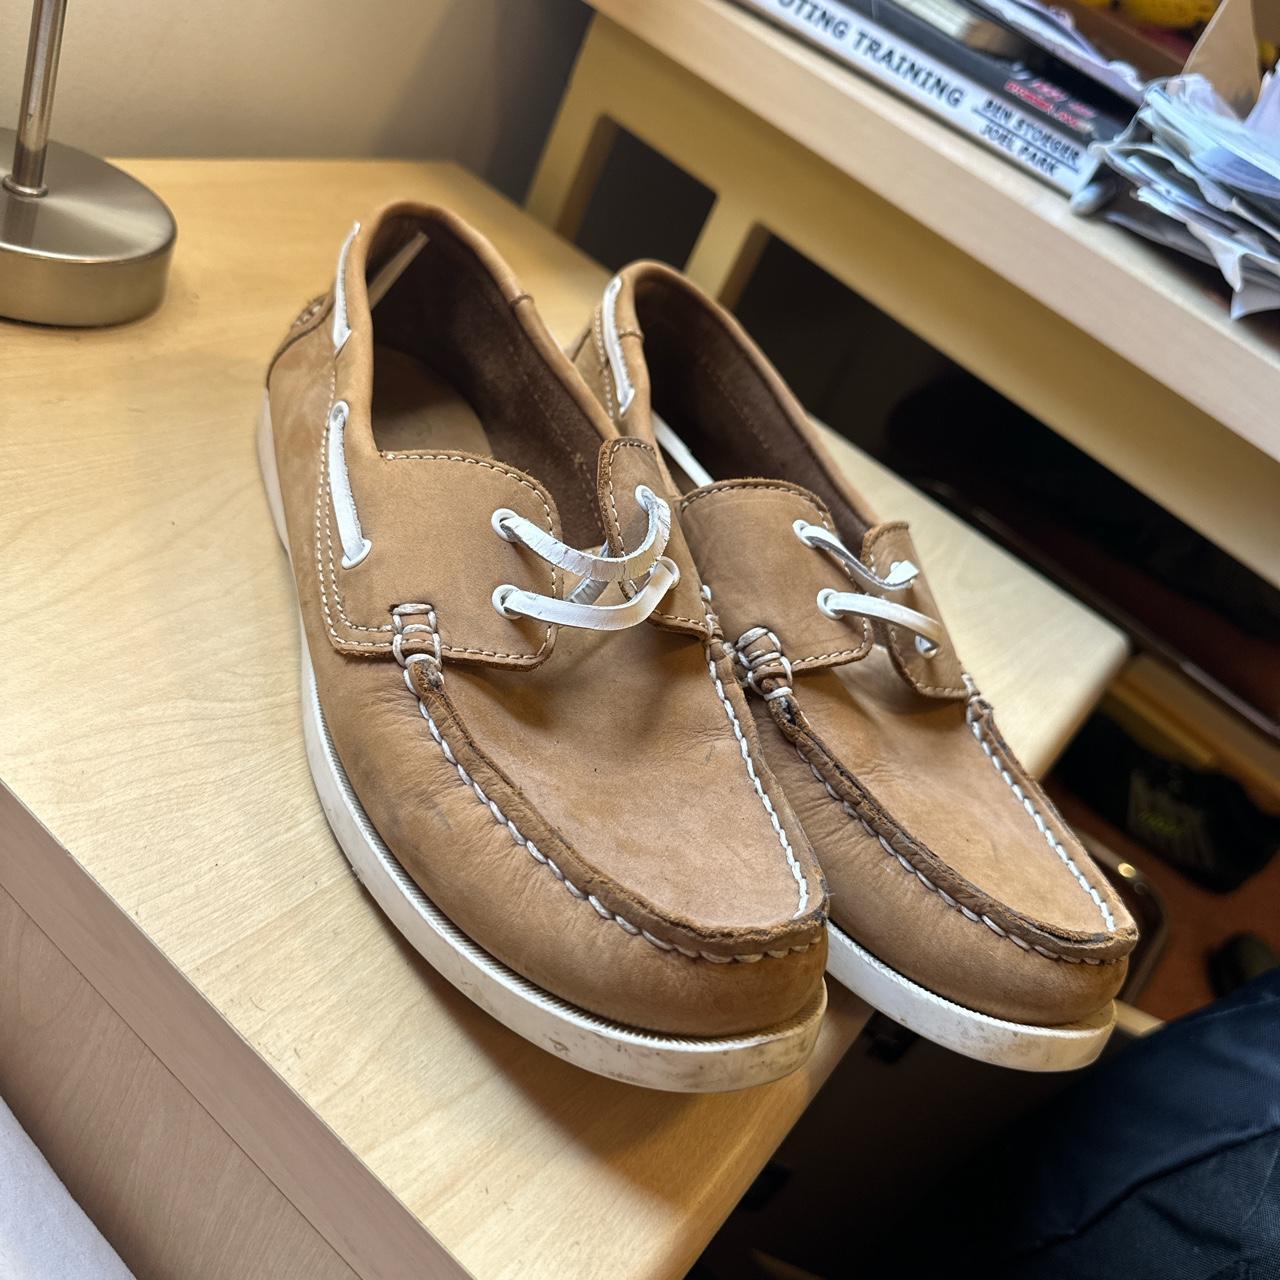 Men’s kurt Geiger boat shoes size 10 good condition - Depop